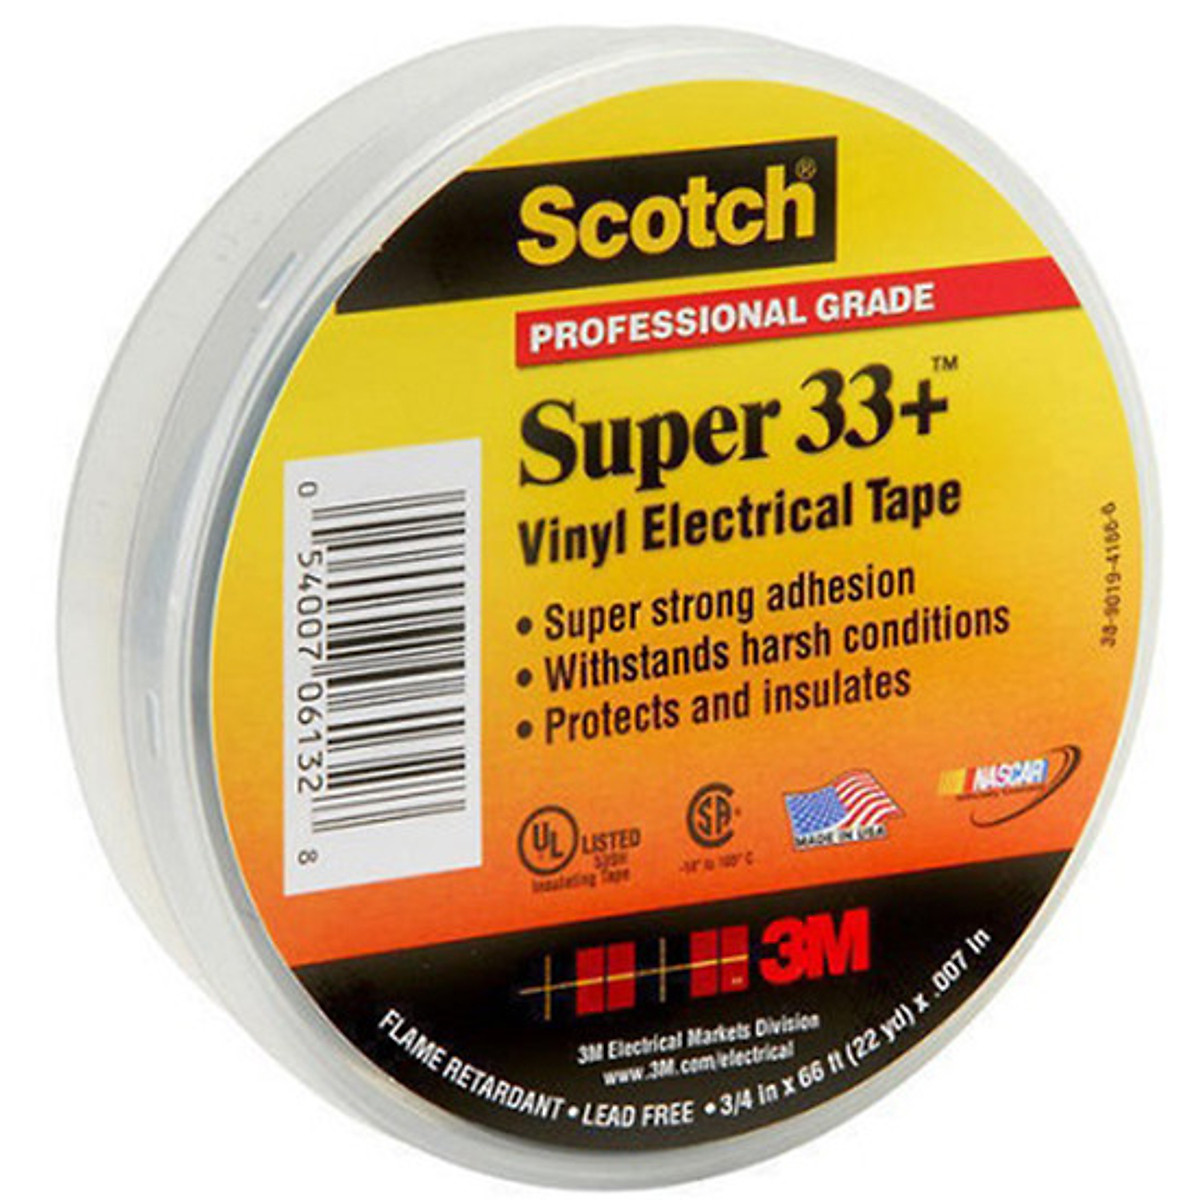 Băng keo cách điện vinyl 3M Scotch Super 33+